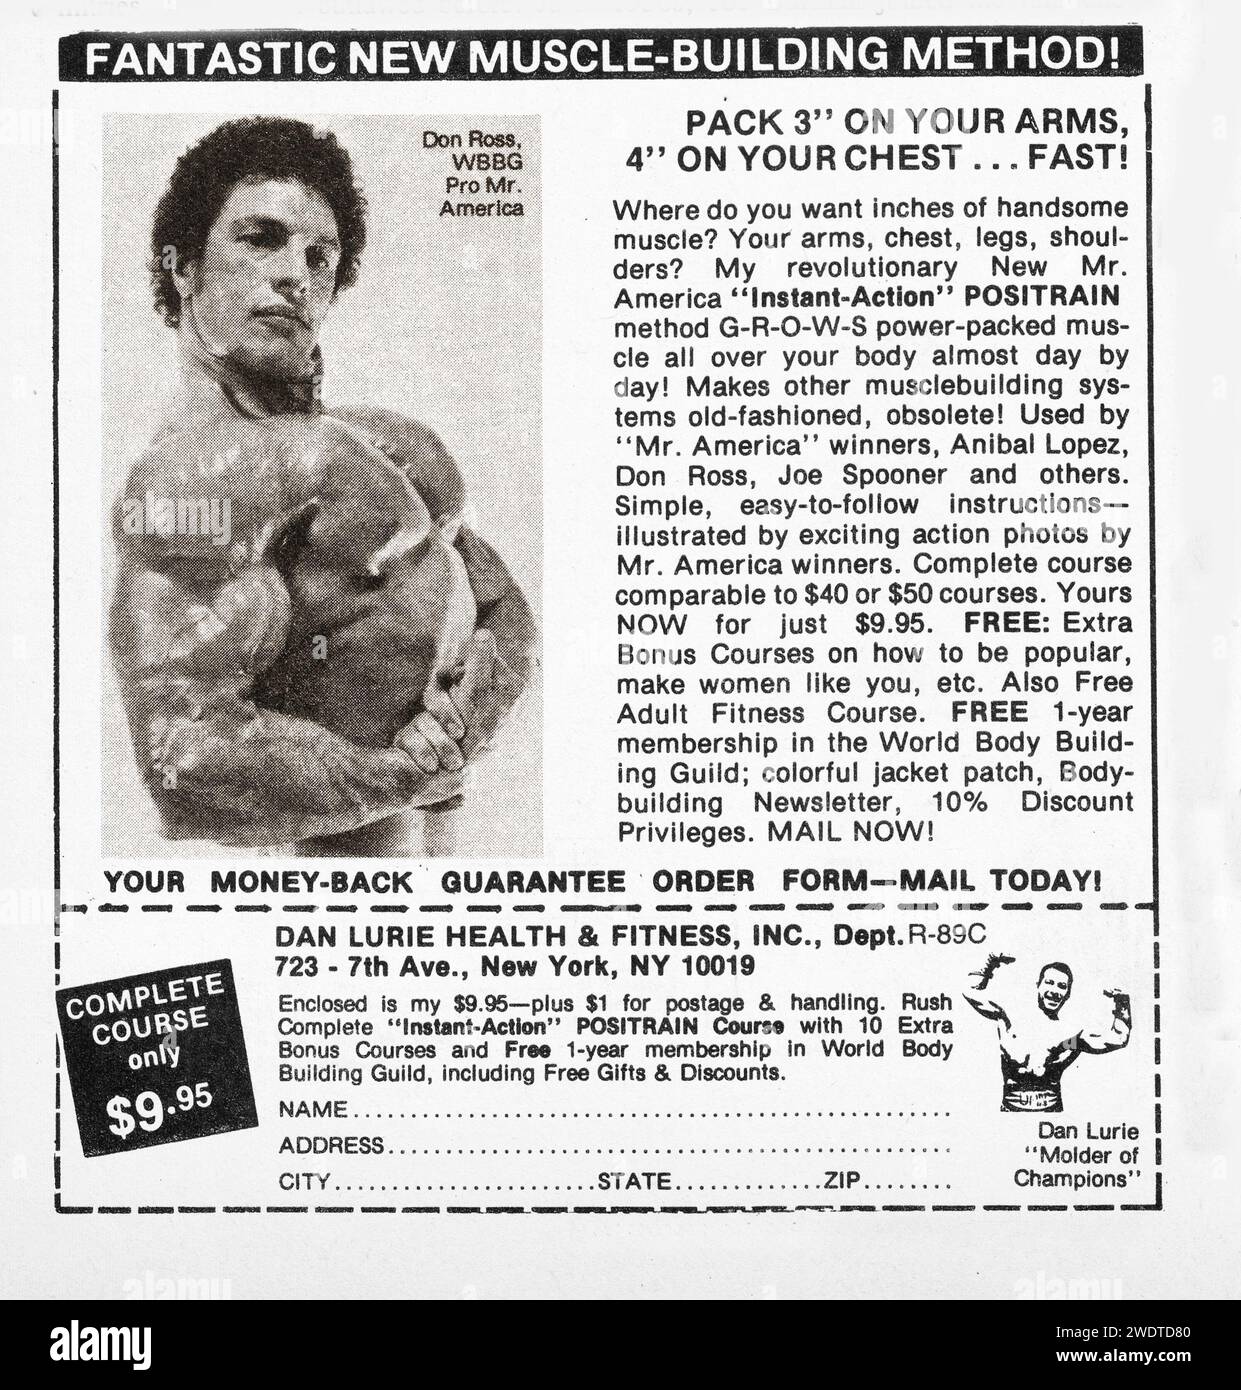 Uno spot di bodybuilding di Dan Lurie su una rivista sportiva della fine degli anni '1970 che offre il suo campo Instant Action Positrain. Generosamente, lanciano un anno di iscrizione gratuita alla World Bodybuilding Guild. Foto Stock